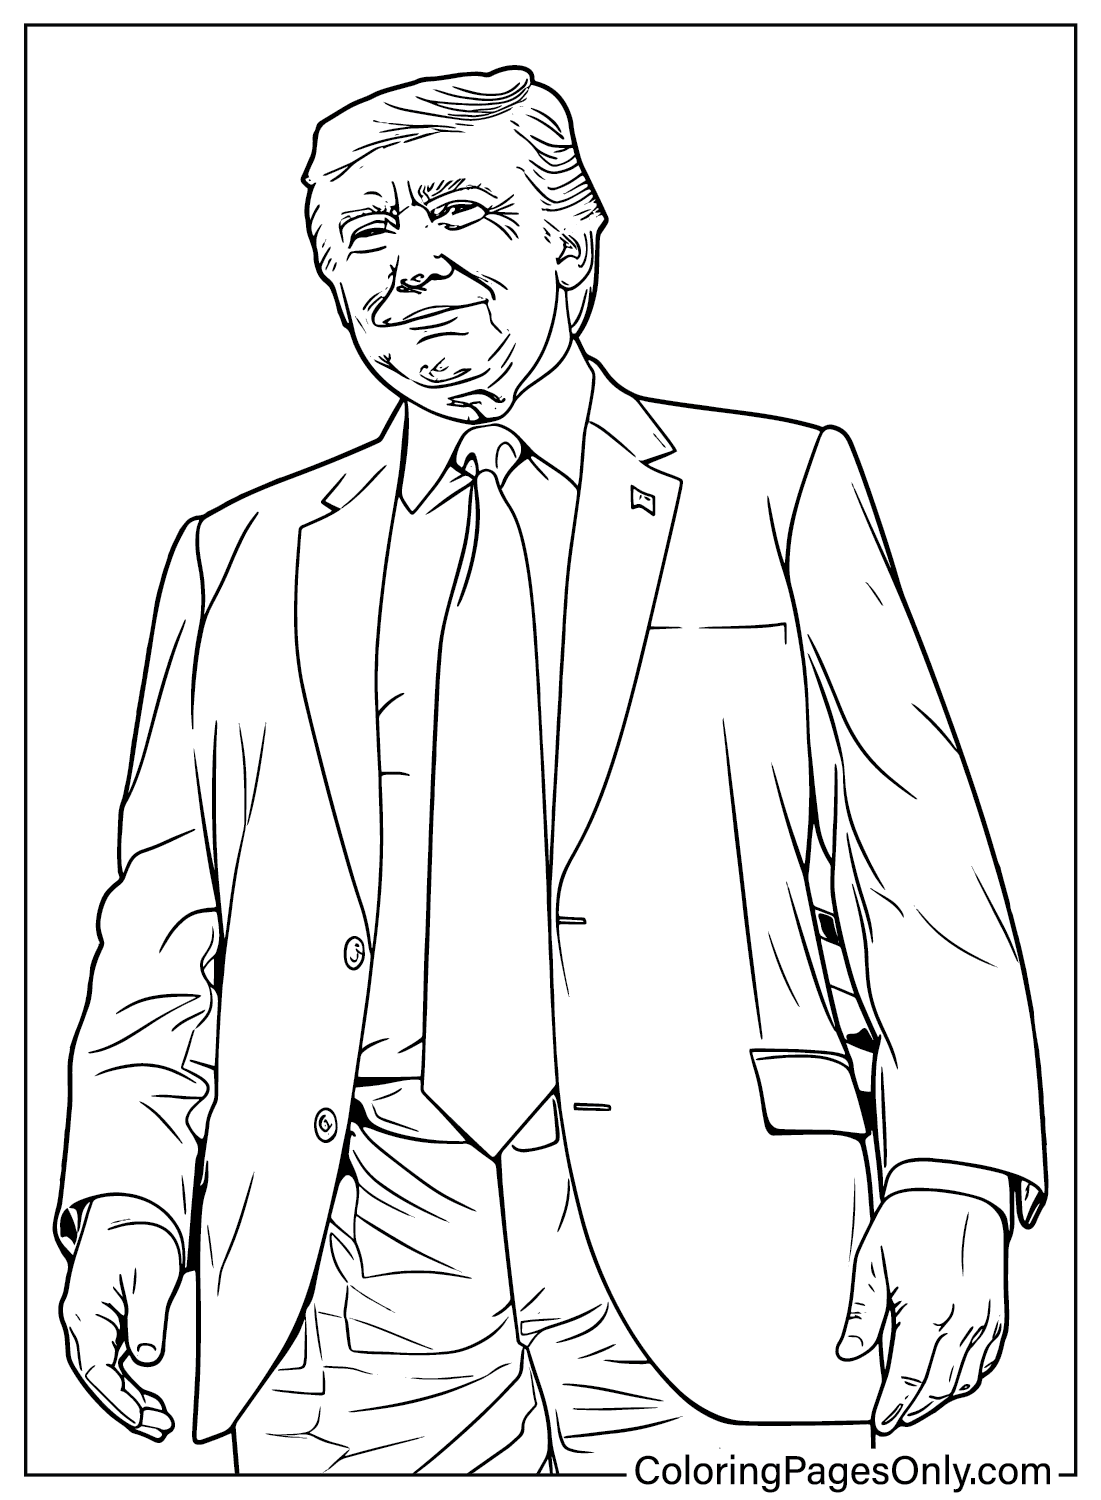 Donald Trump afdrukbare kleurplaat van Donald Trump